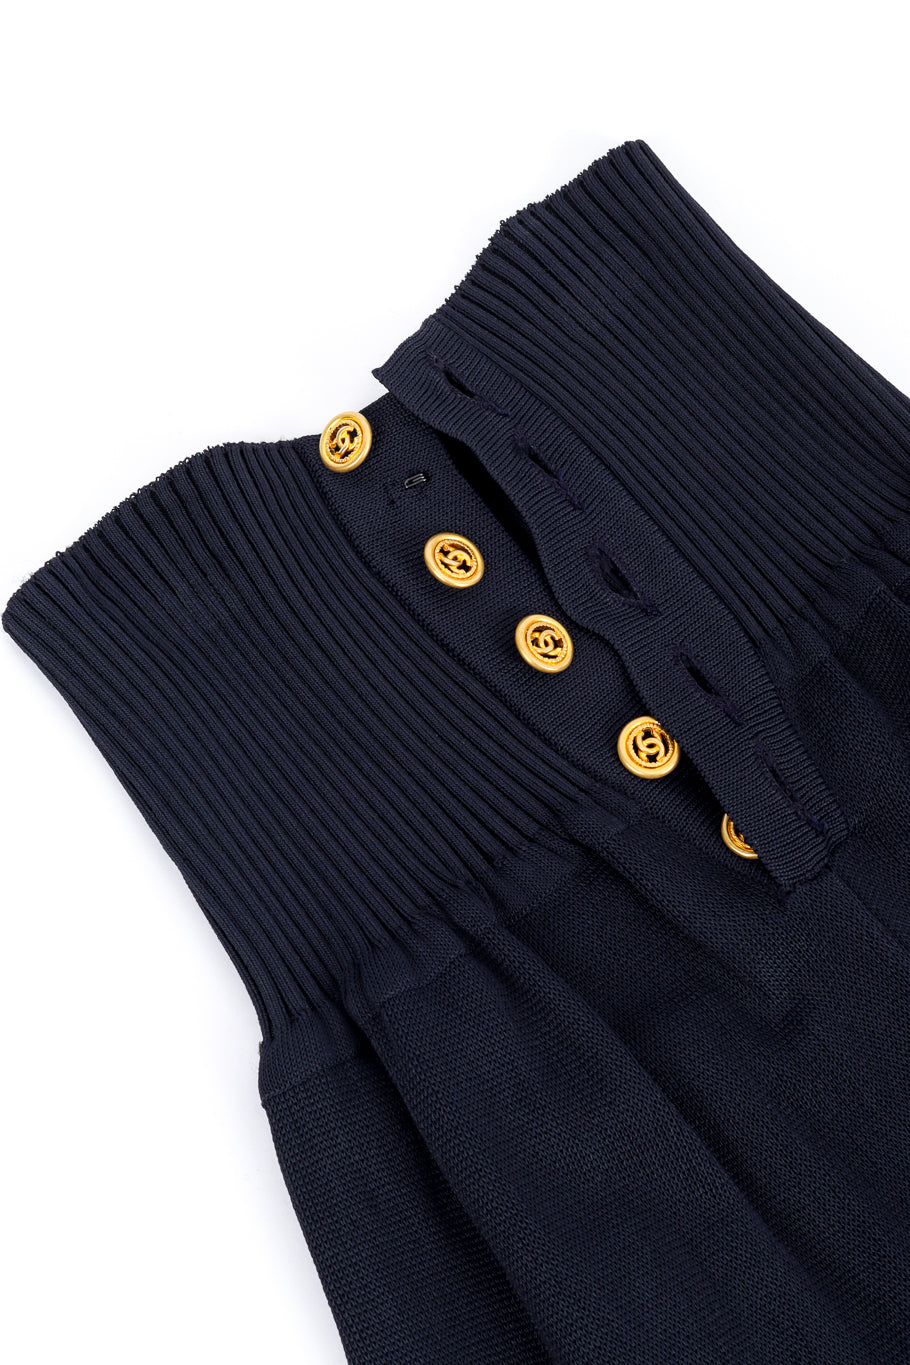 Vintage Chanel High Waist Knit Pant front button closure @recess la